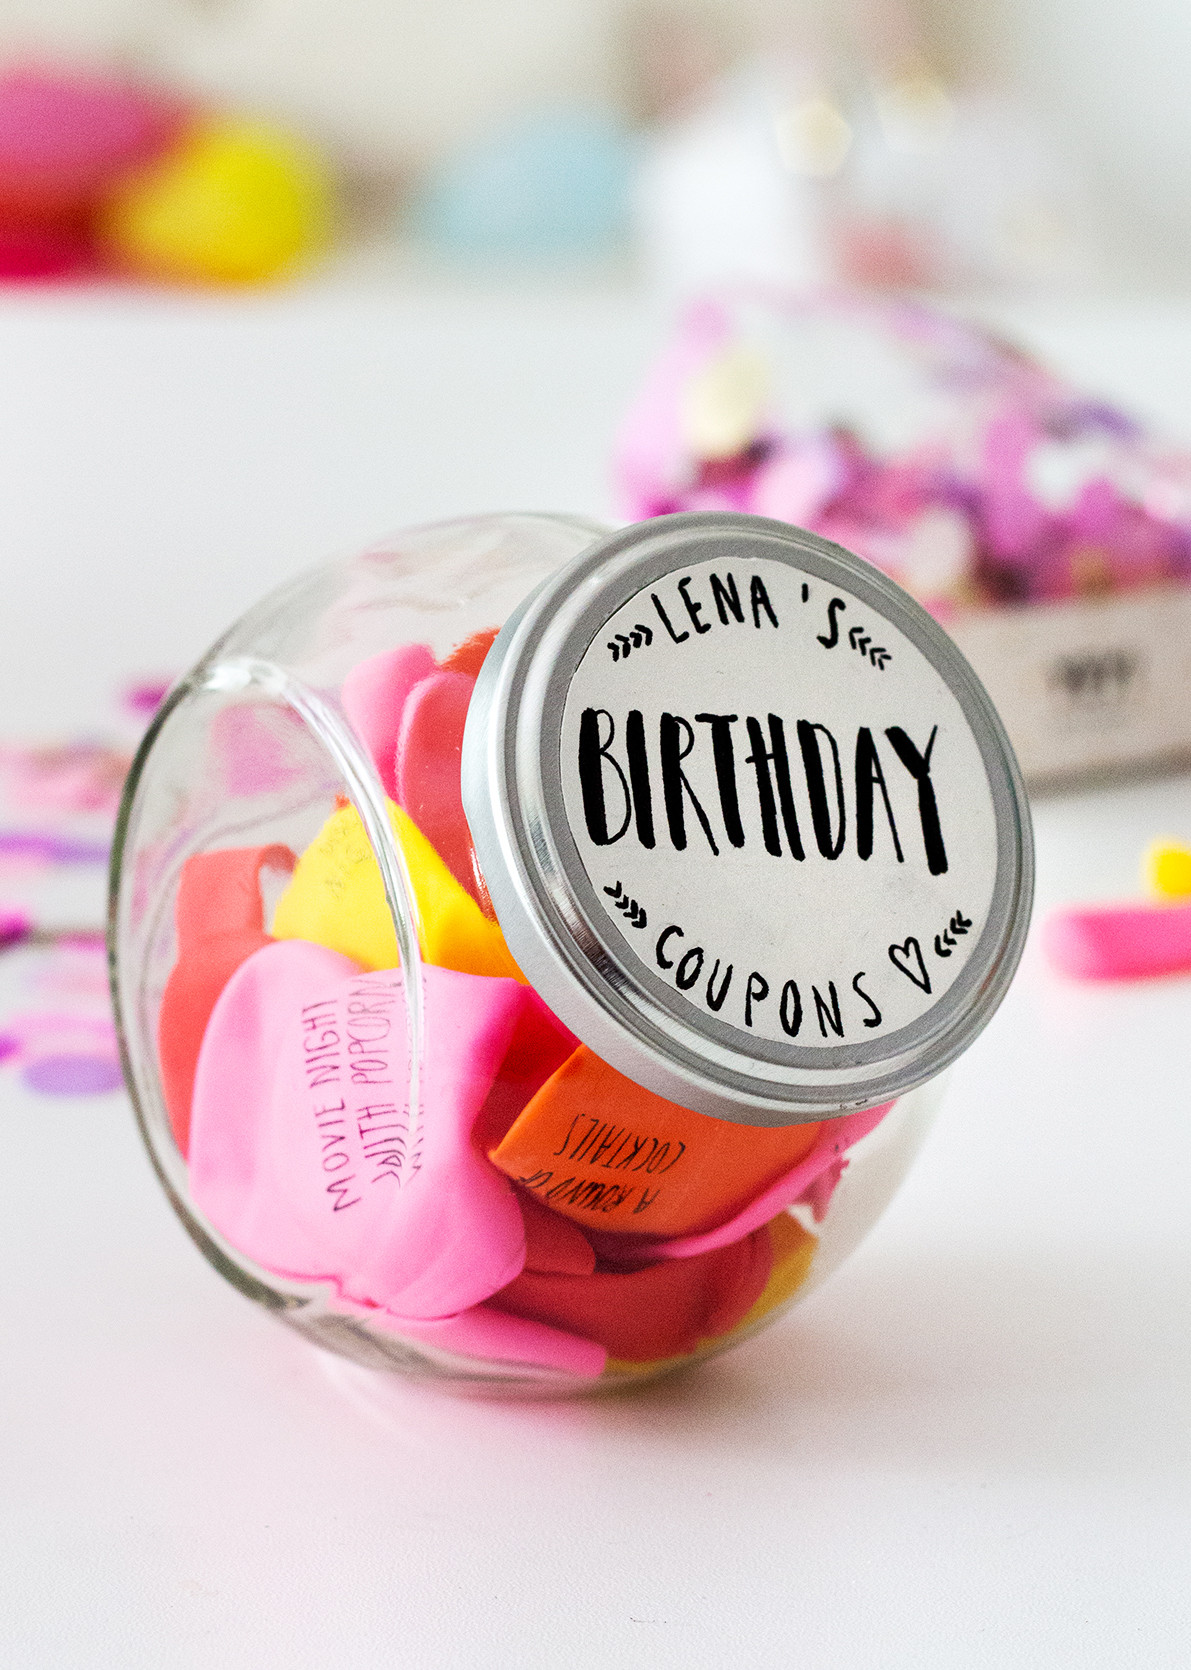 Geburtstagsgeschenke Selber Basteln
 Geburtstagsgeschenke selber machen Drei DIY Ideen •